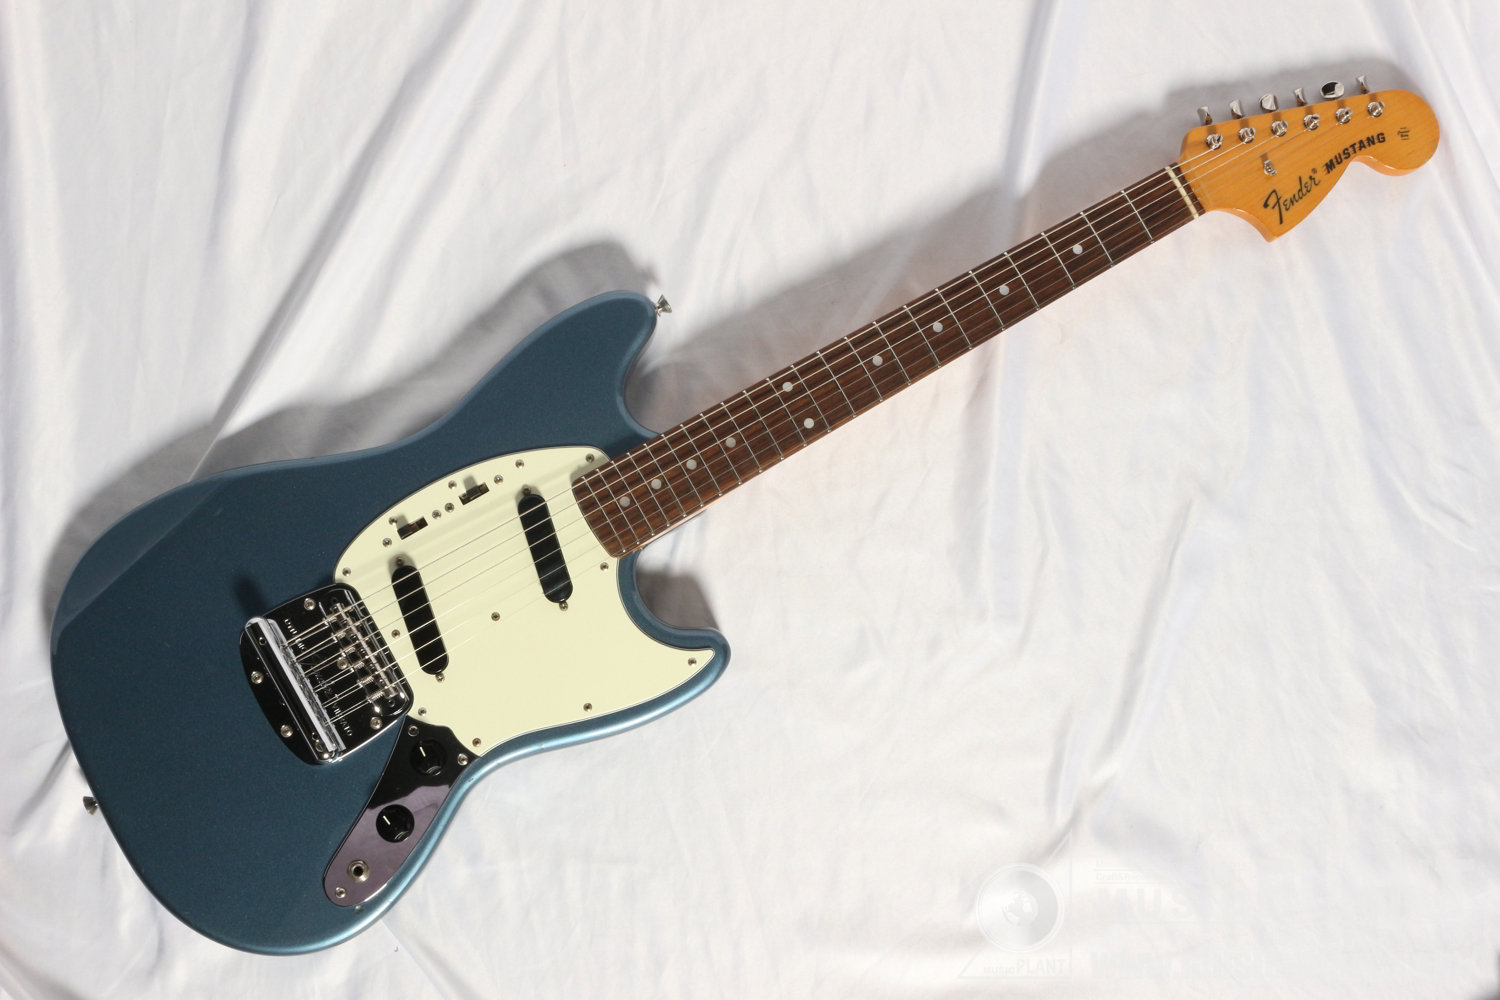 Fender Japan ムスタングMG69 OLB中古()売却済みです。あしからずご